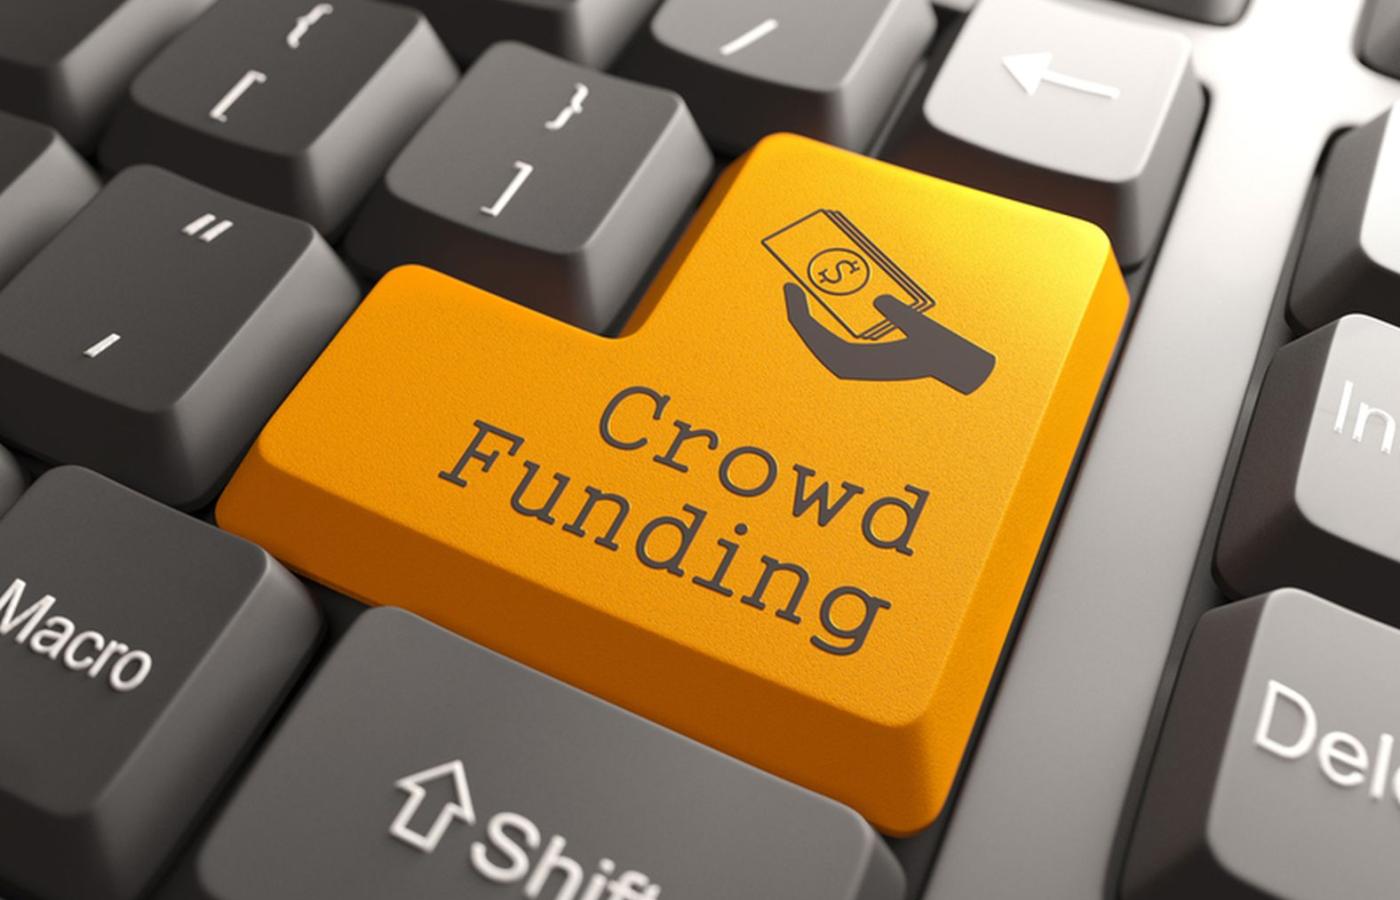 Coraz popularniejszy w sieci jest tzw. crowdfunding, czyli zrzutka na realizację jakiegoś pomysłu czy projektu.